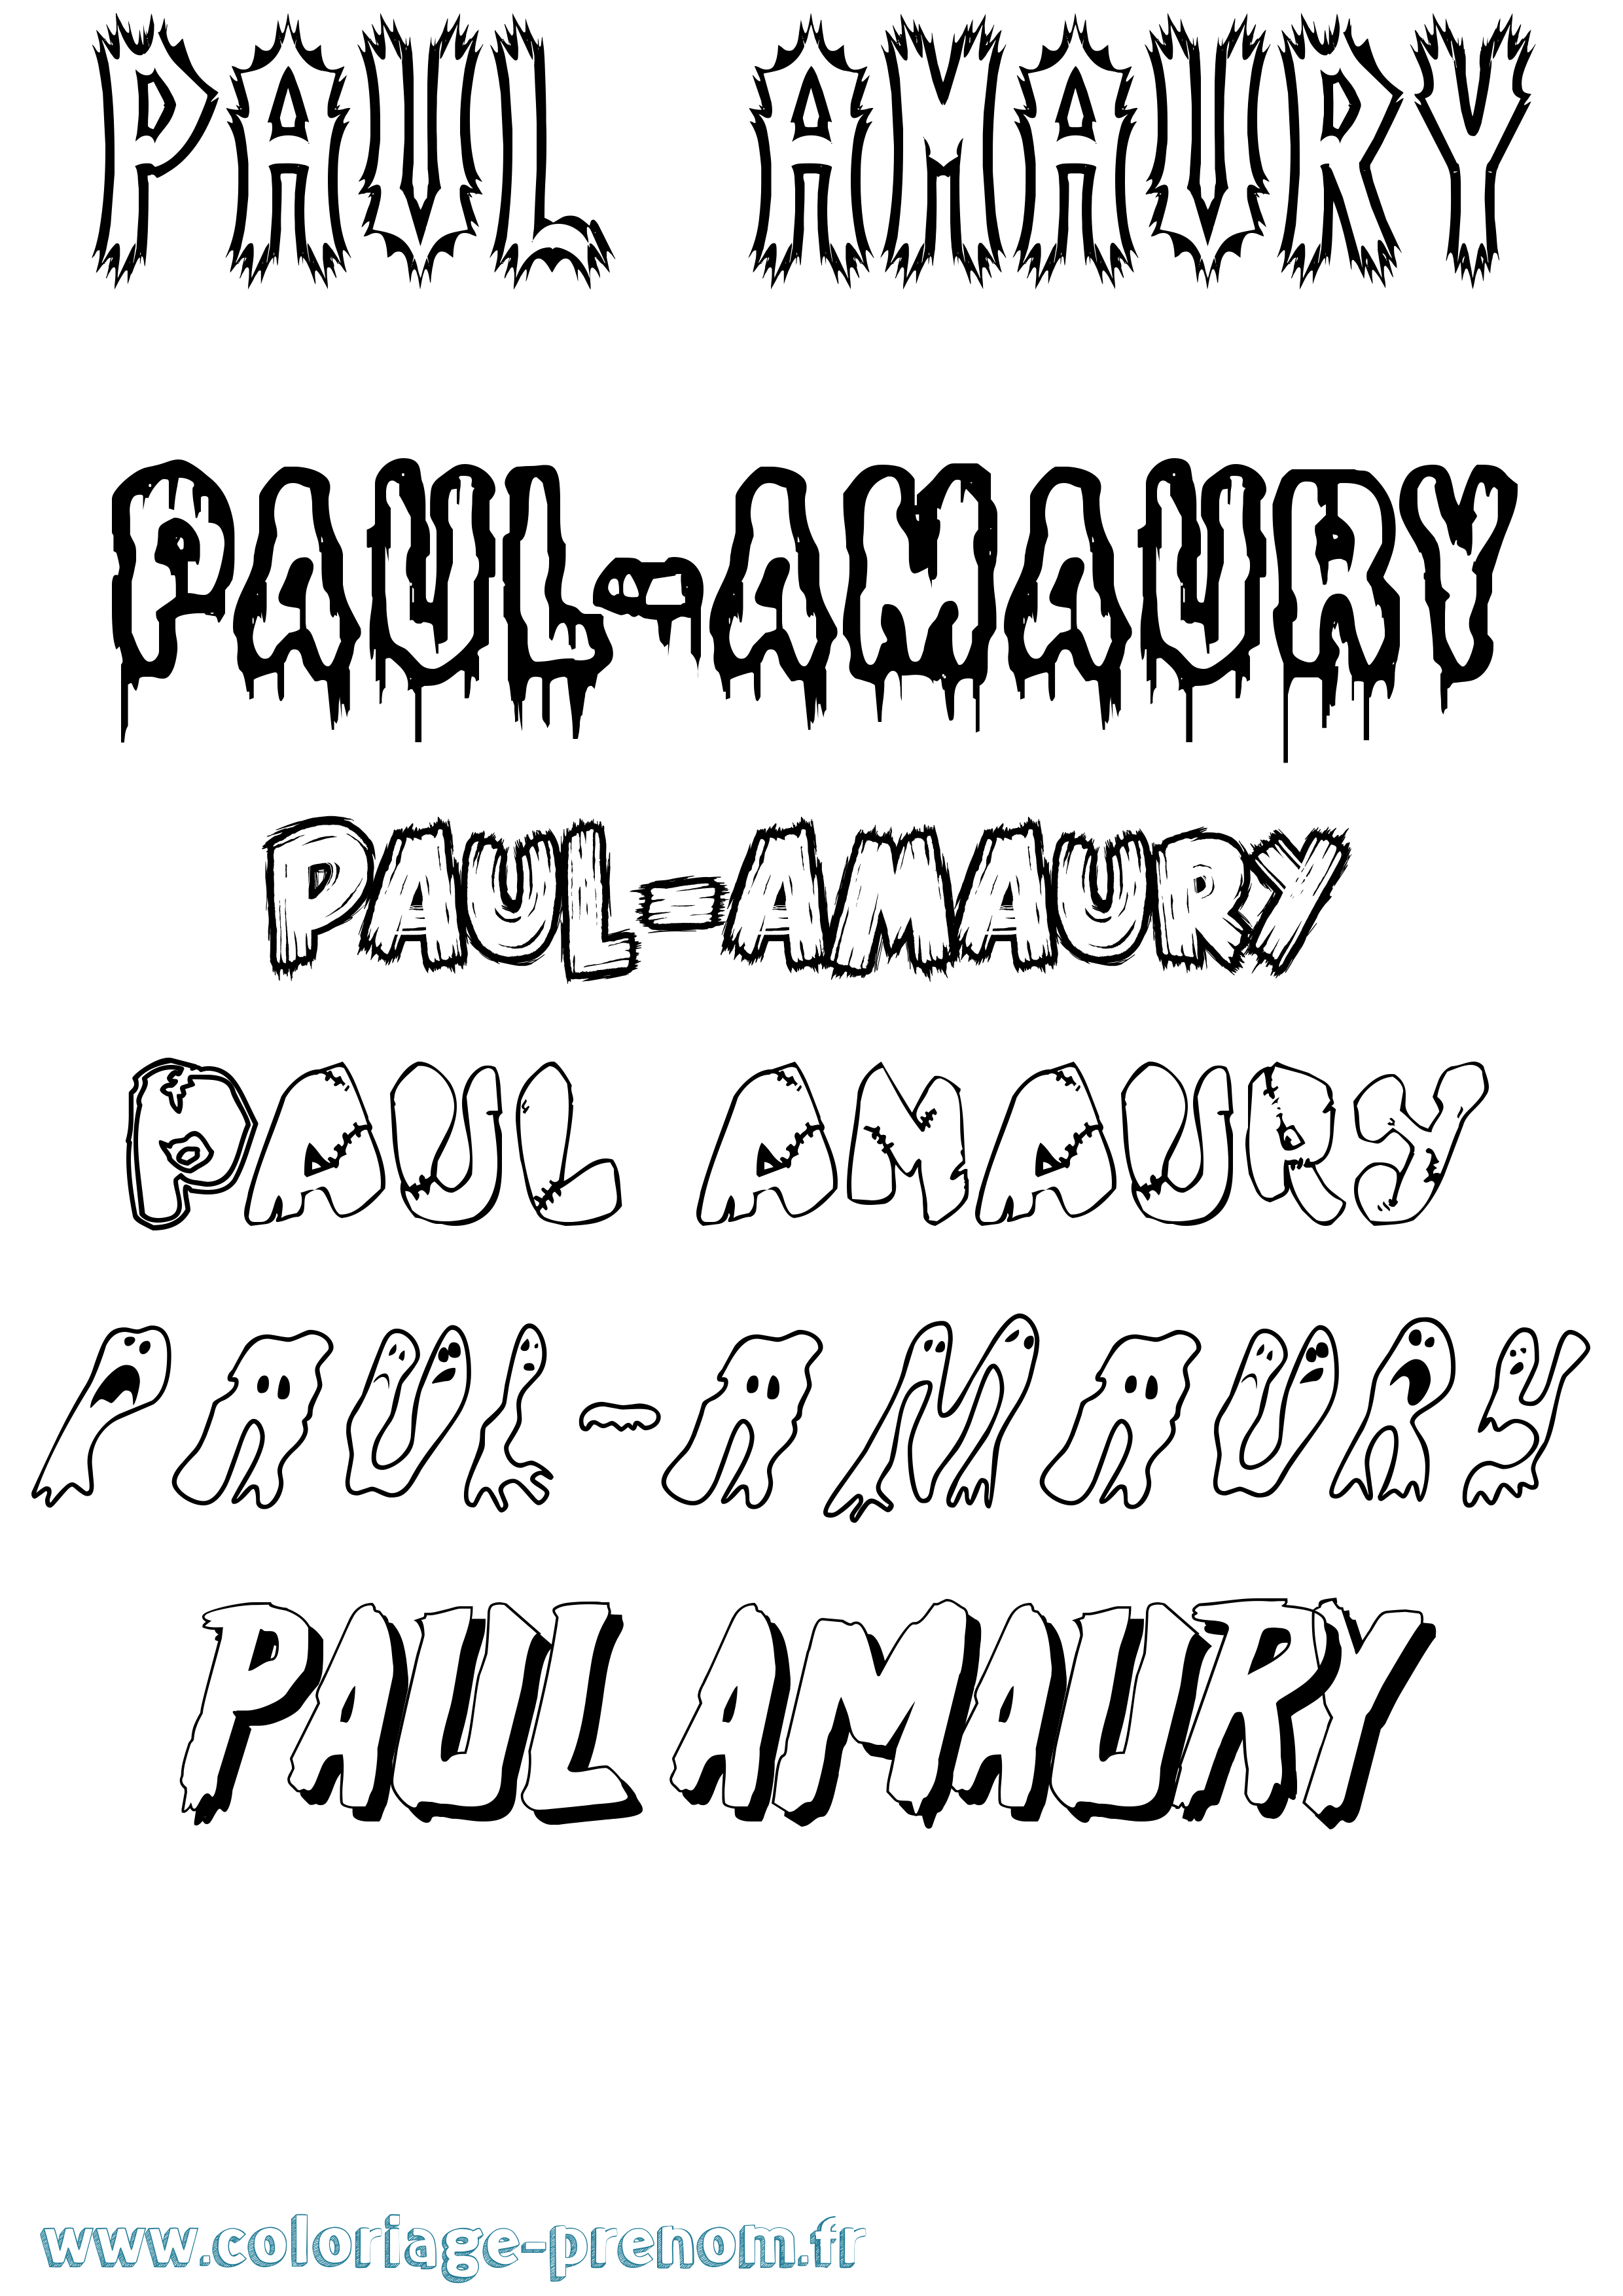 Coloriage prénom Paul-Amaury Frisson